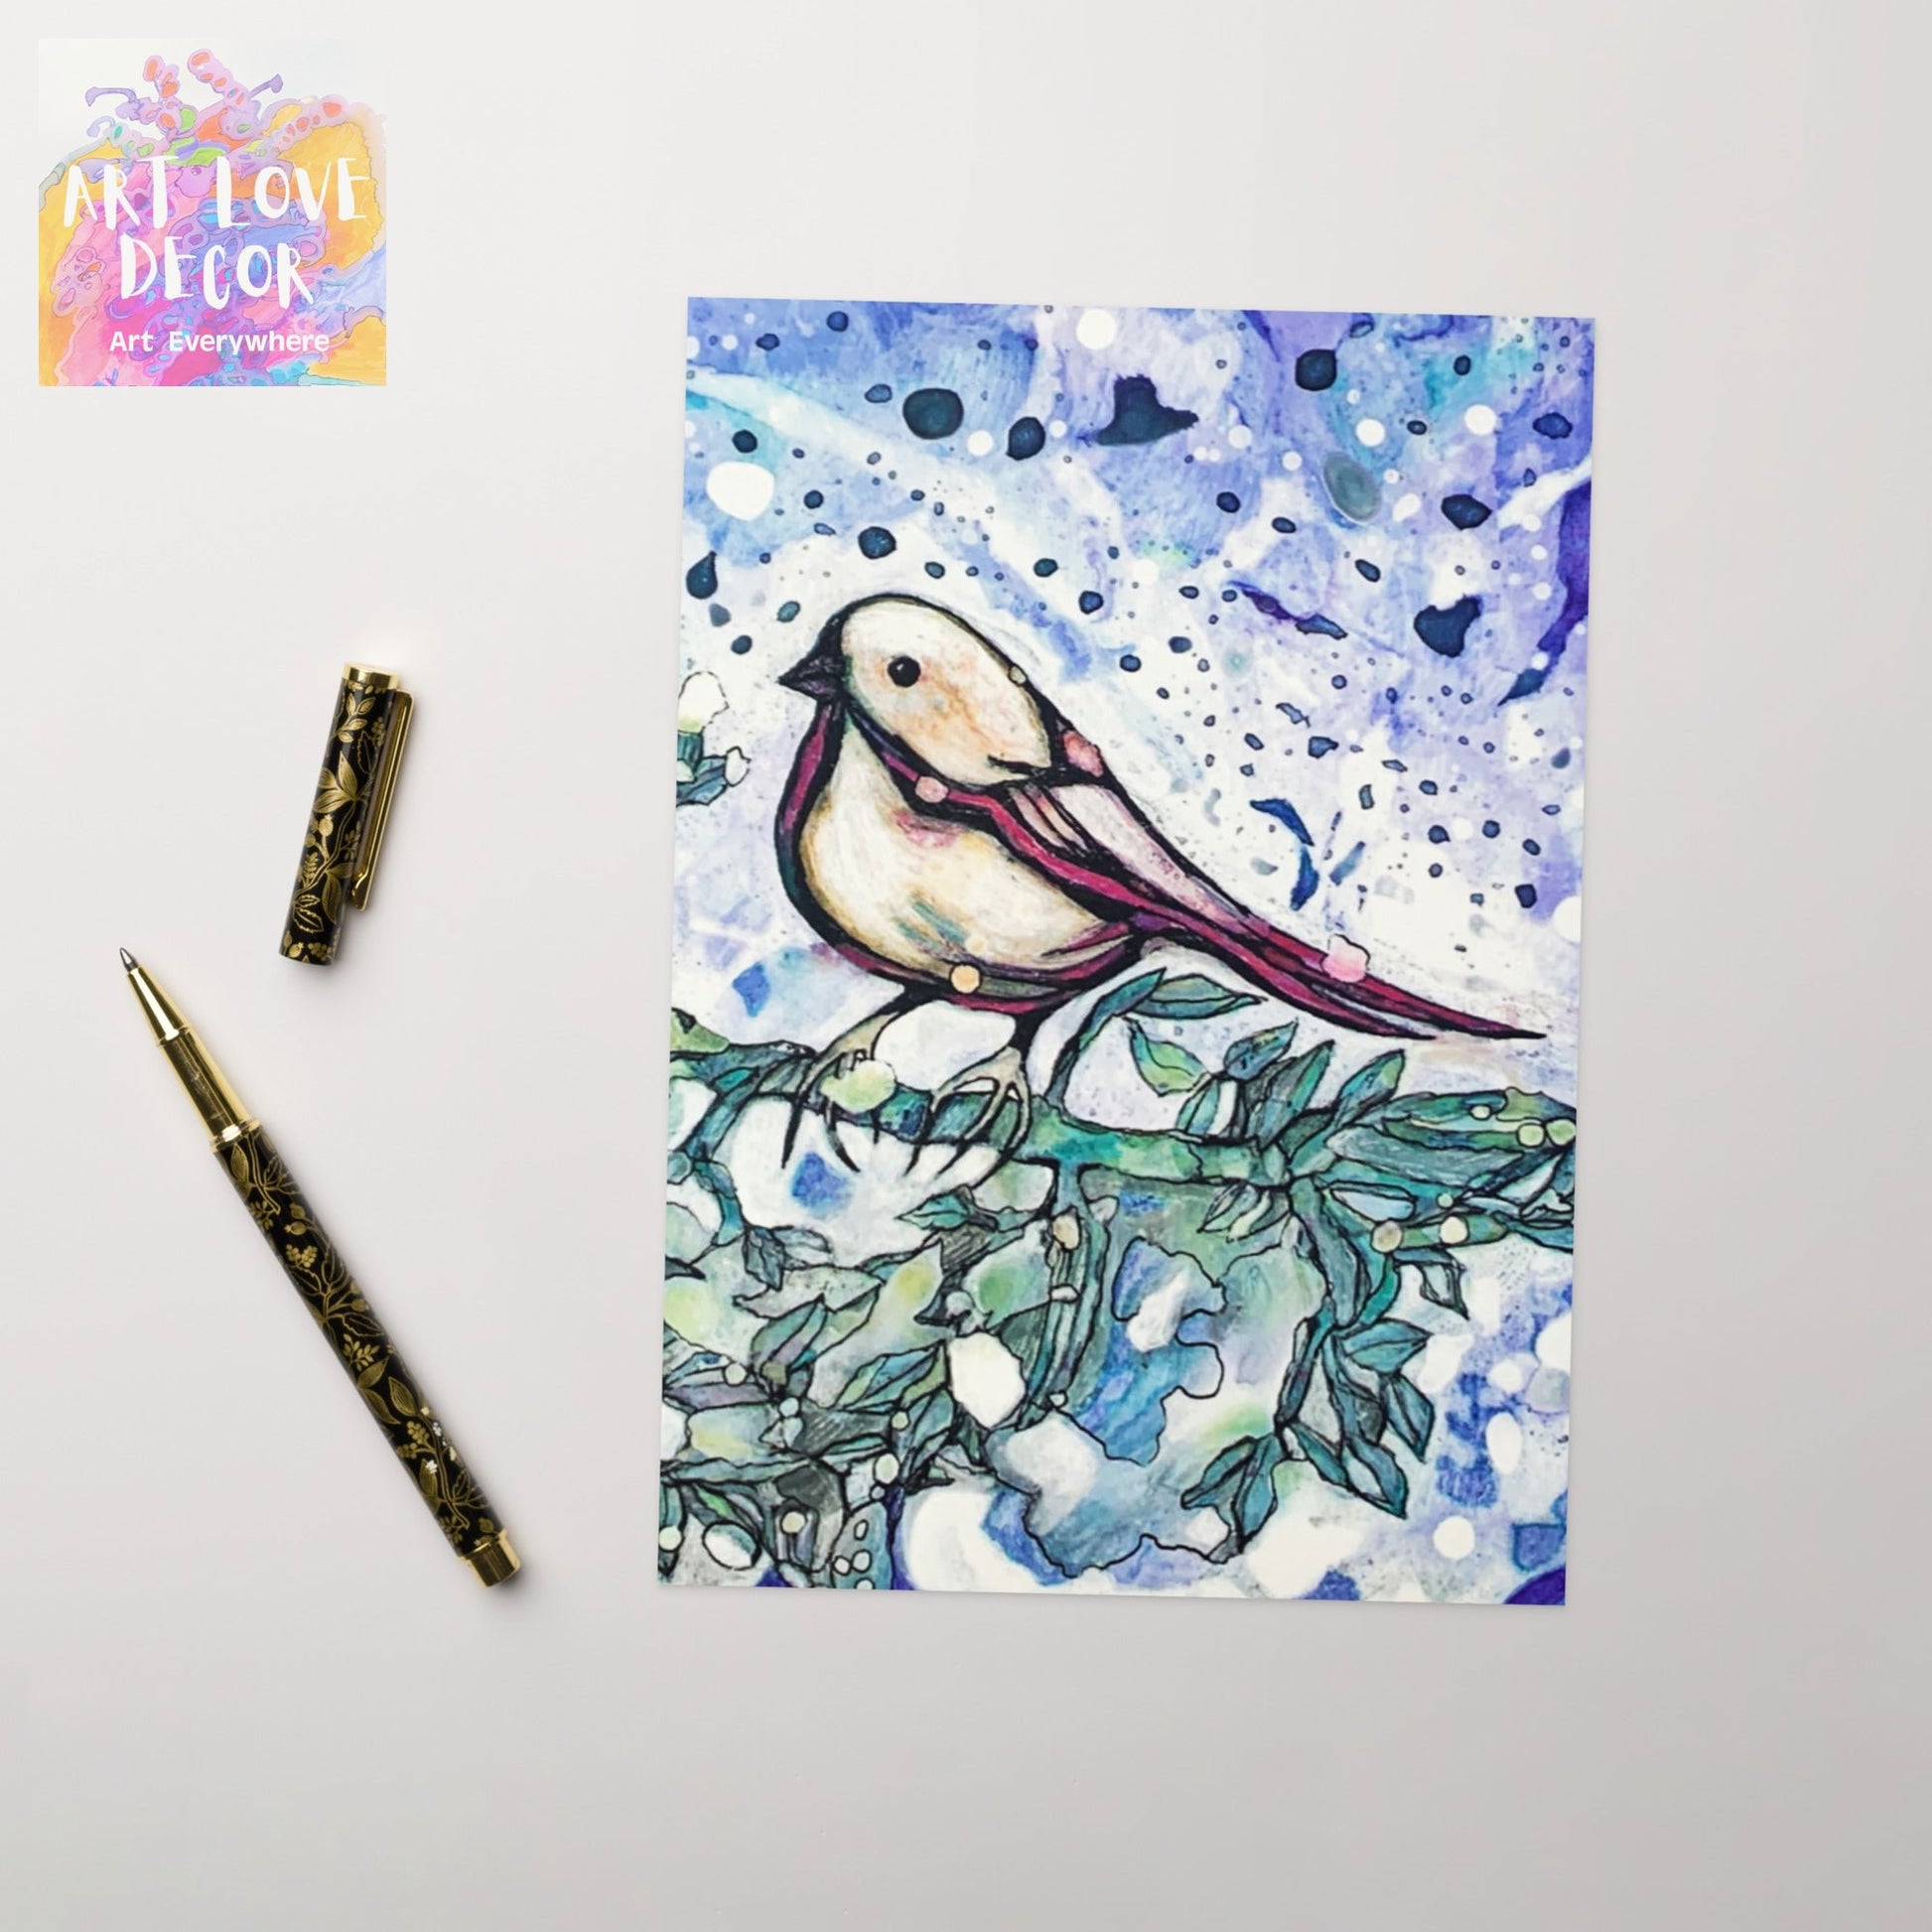 Rain Bird Greeting card - Art Love Decor